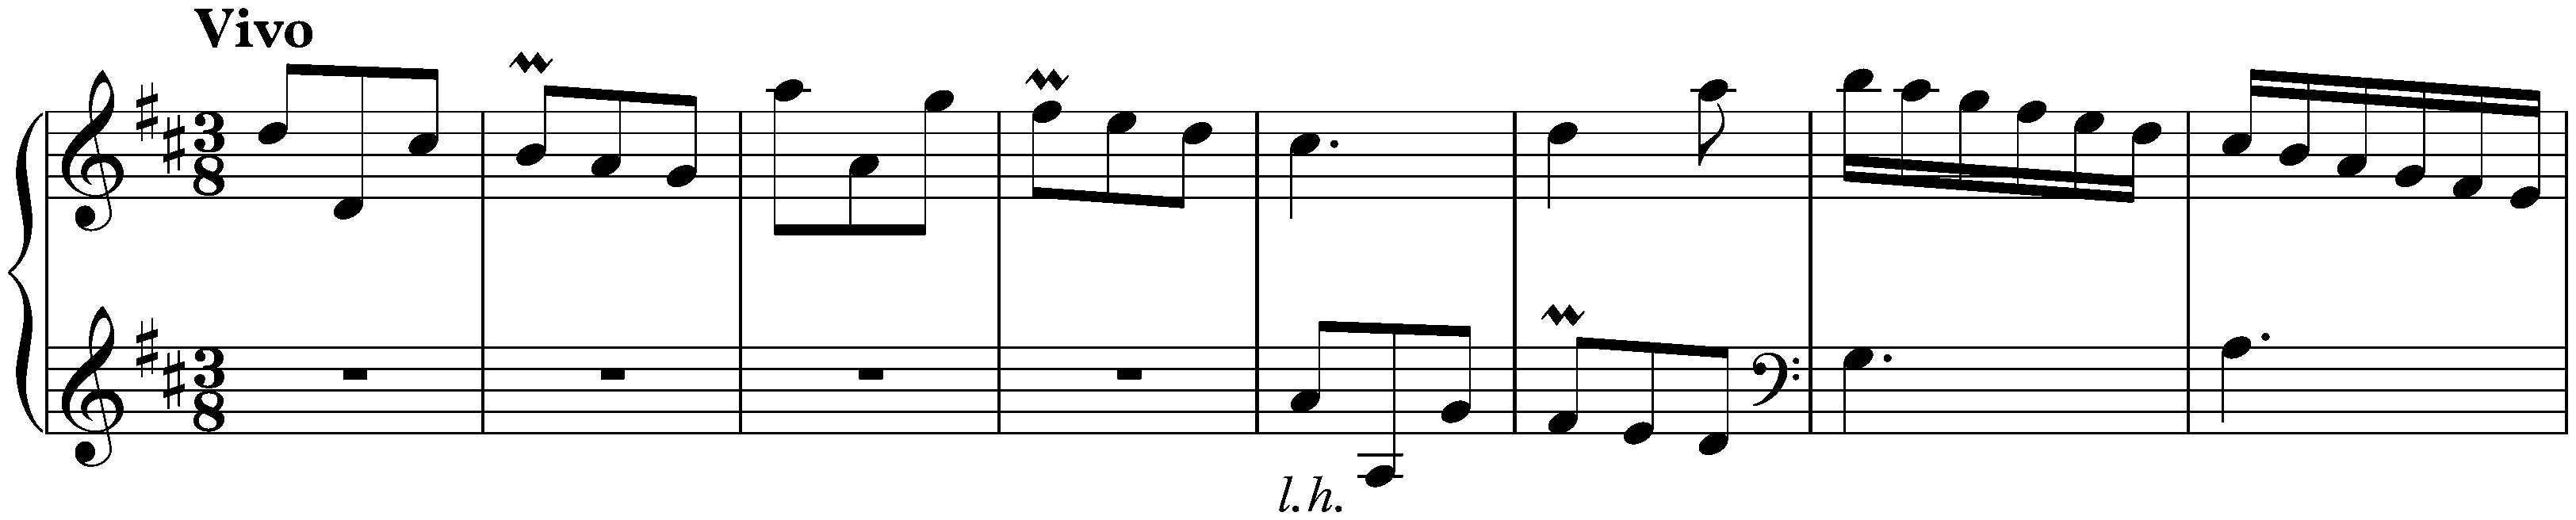 Sonata in D major, K. 178